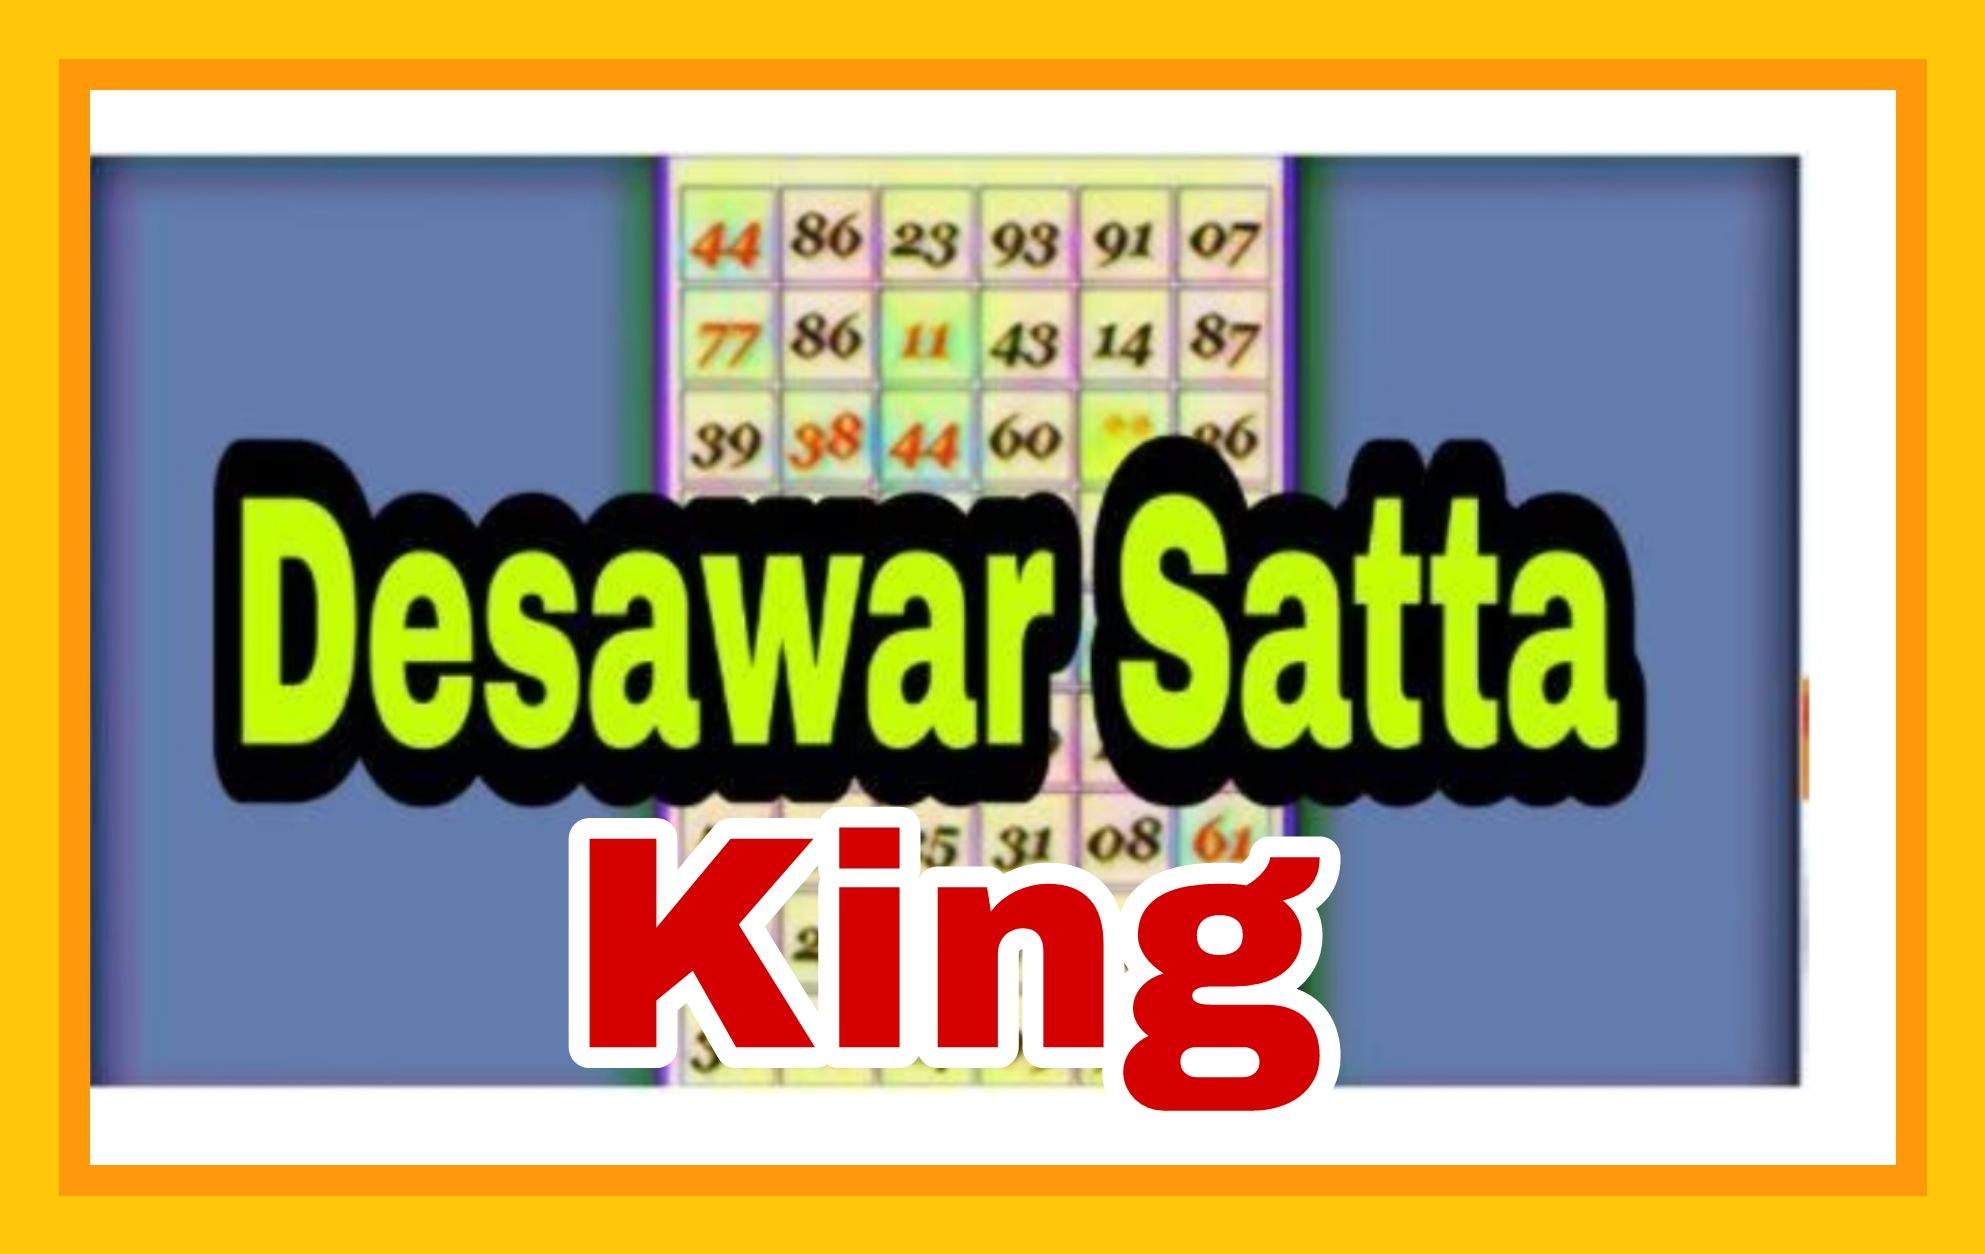 दिसावर सट्टा किंग आज के दिन 20.09.2022 का रिजल्ट | Disawar Satta king Aaj ke din SUNDAY ko result